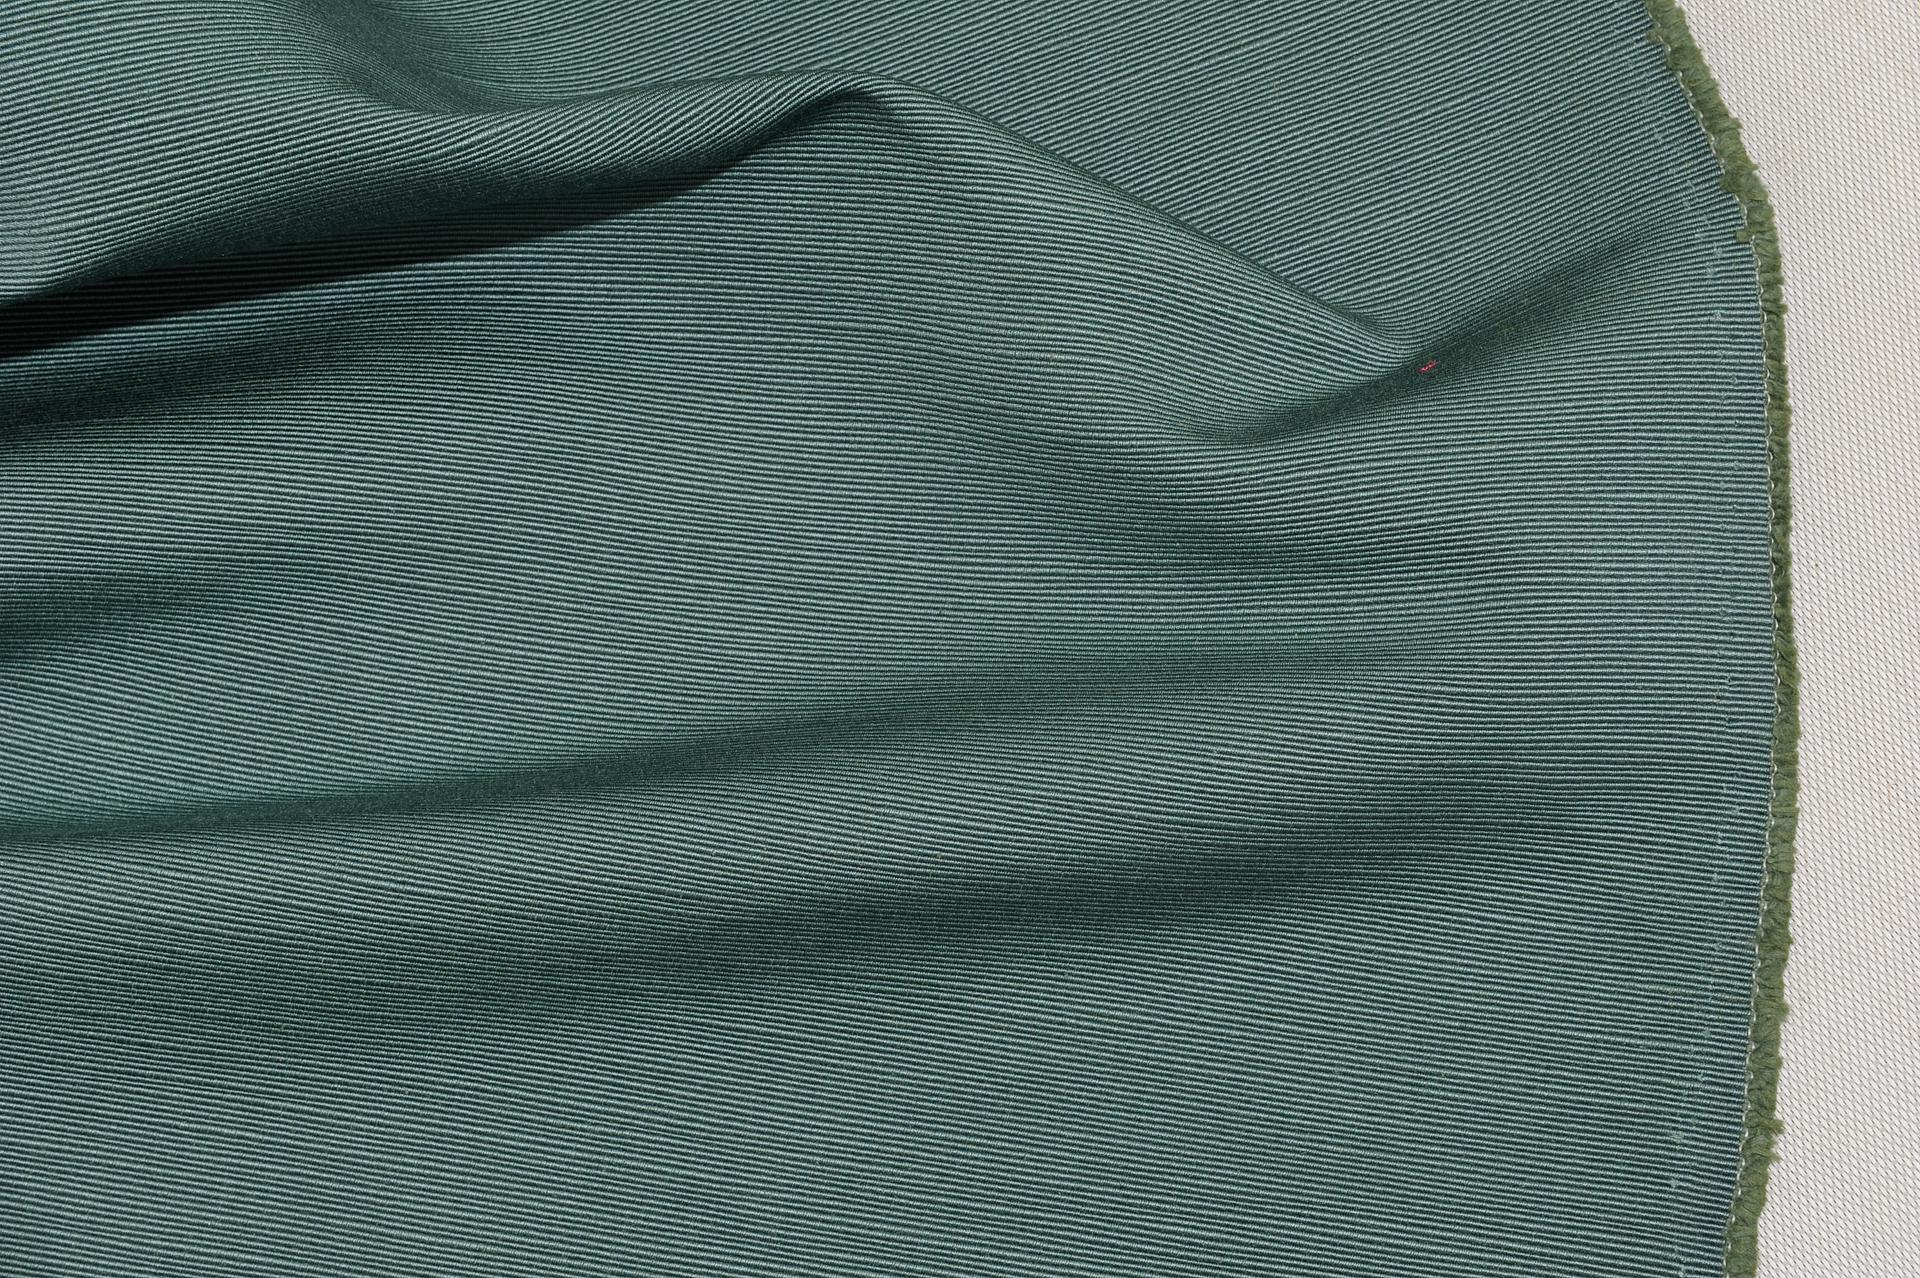  Textilgewebe für Sofapolsterung, Cannété-Verarbeitung: ANGEBOT (Sonstiges) im Angebot